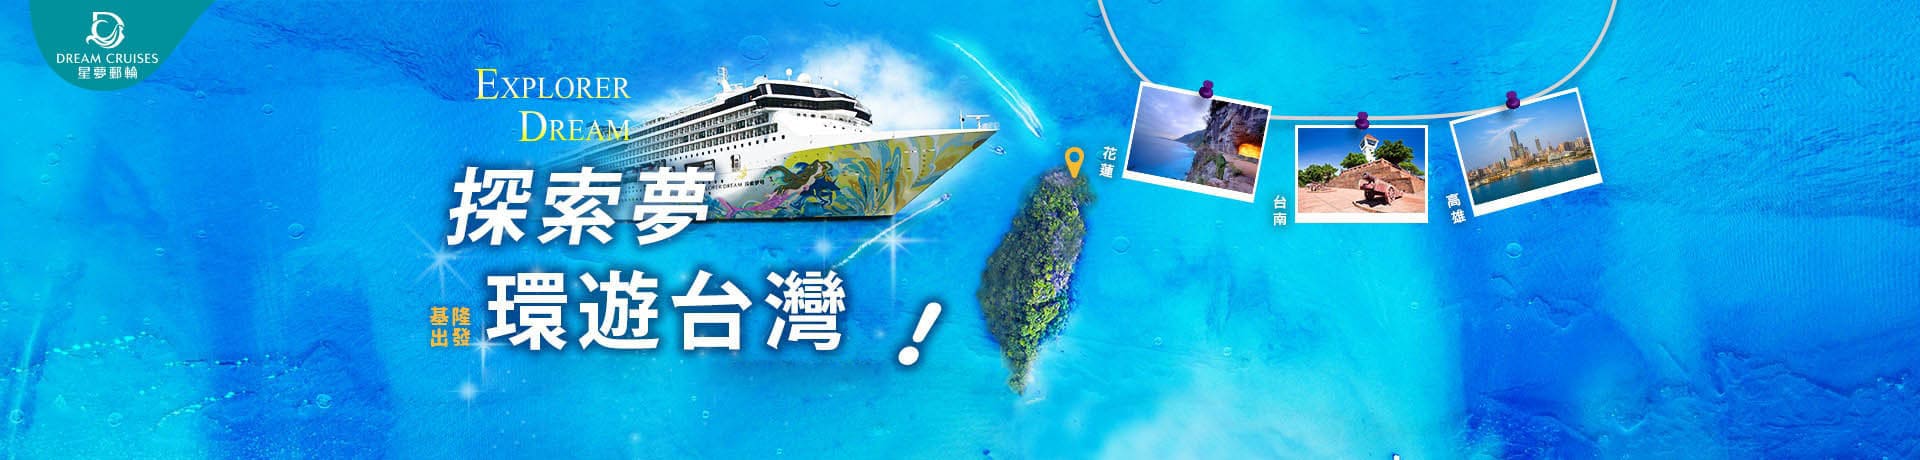 國內旅遊-星夢郵輪-探索夢號2020跳島郵輪